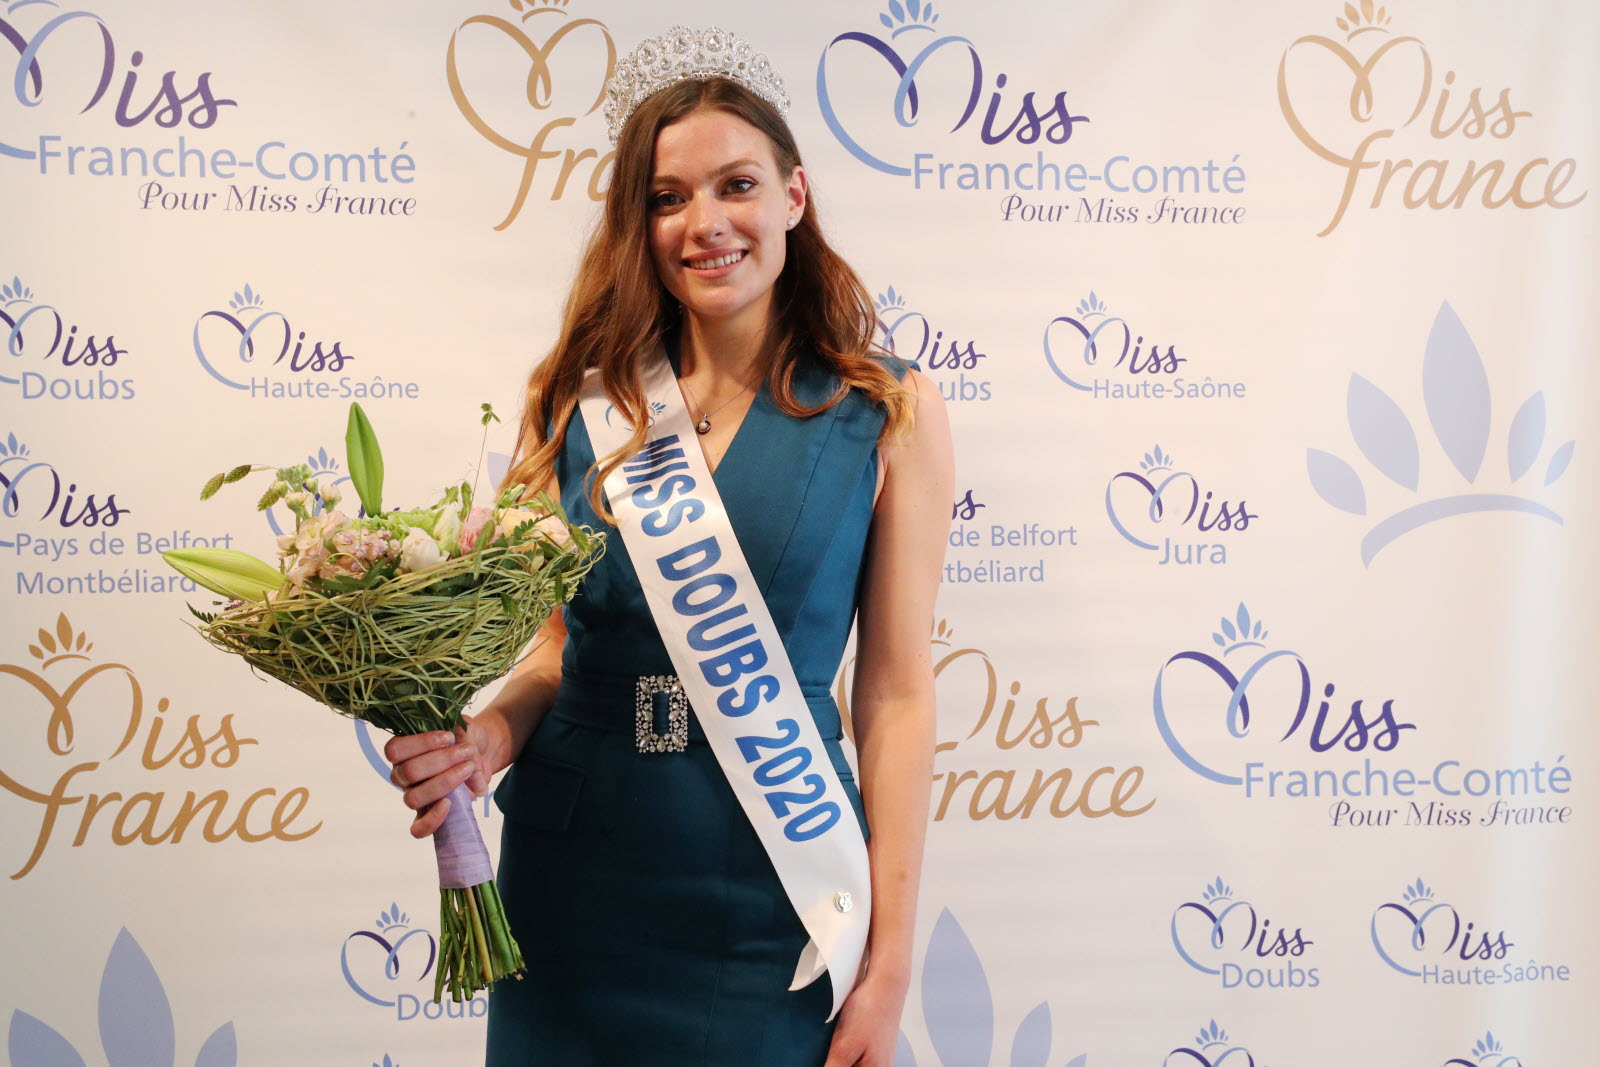 Le père d’Anastasia Salvi, la Miss Franche-Comté destituée, accuse le Comité Miss France de complot